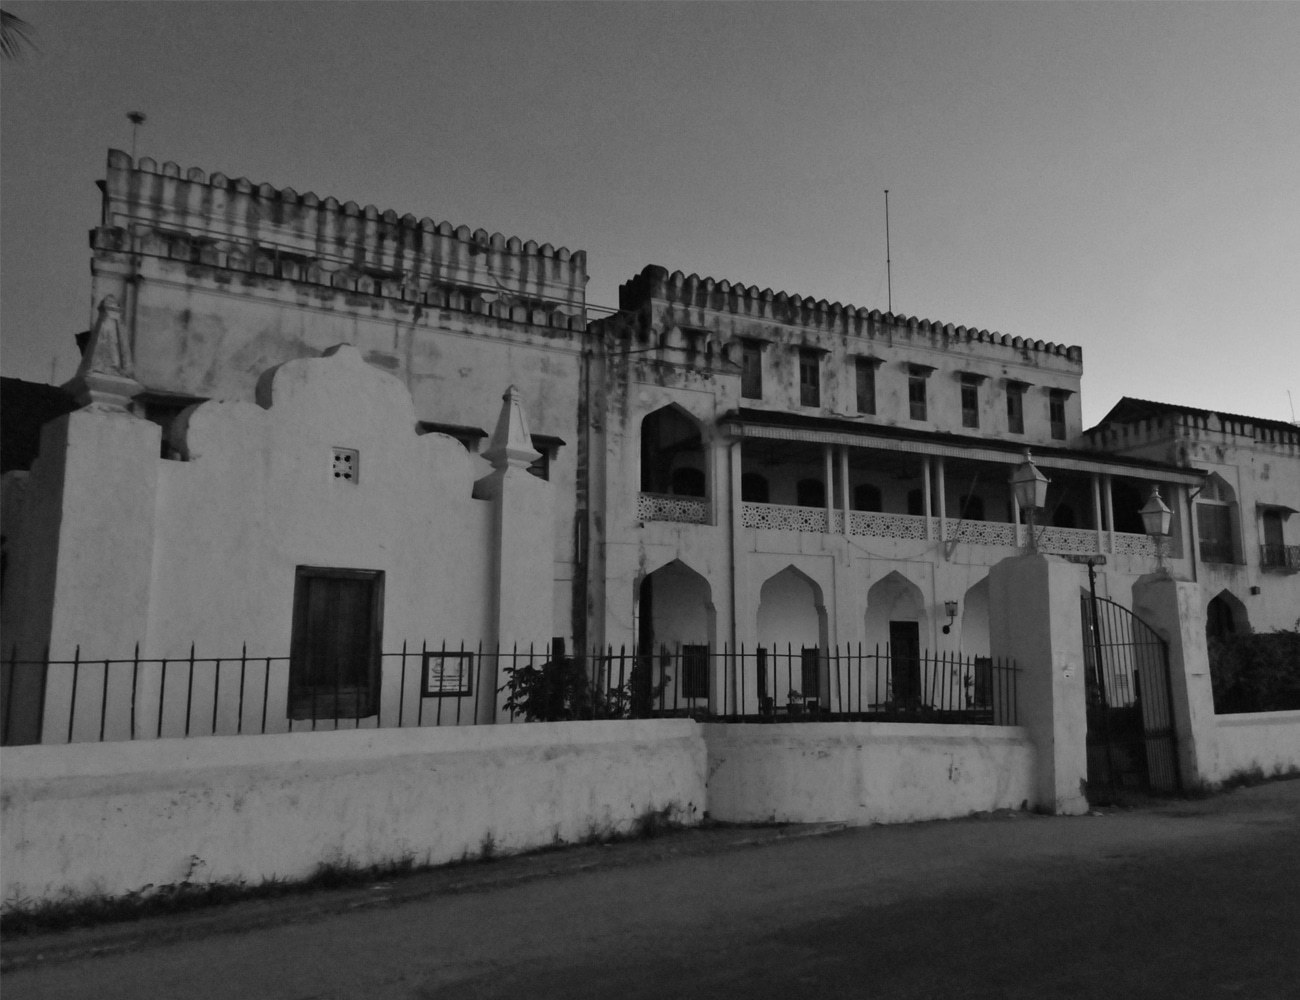 The Sultan's Palace in Zanzibar